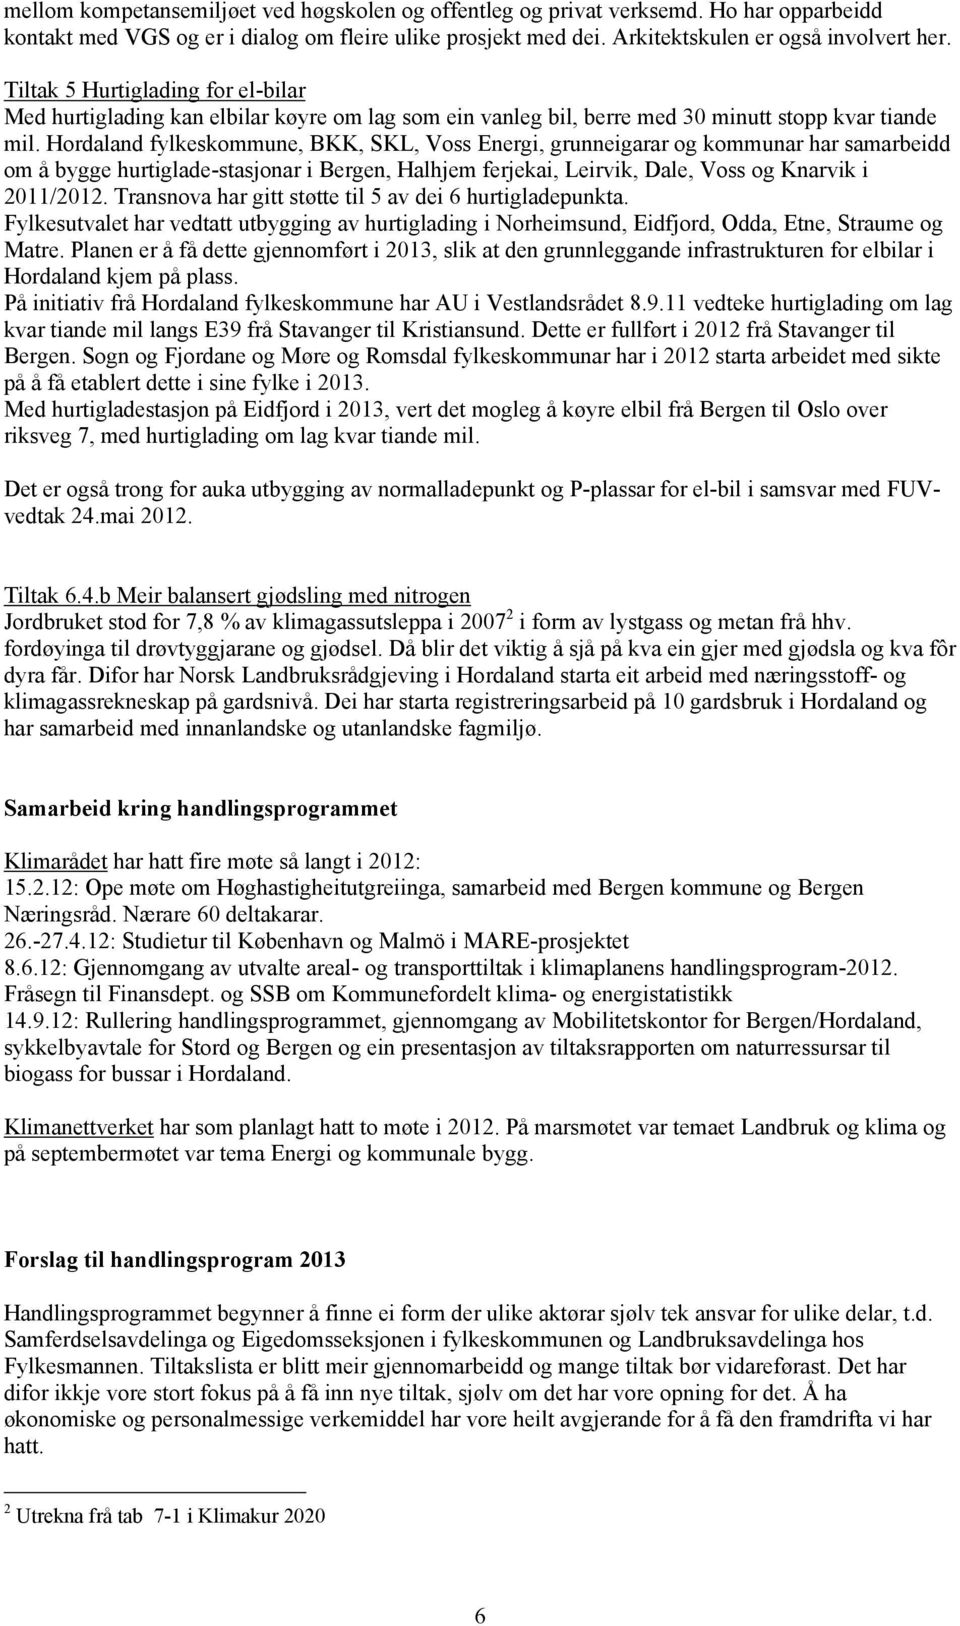 Hordaland fylkeskommune, BKK, SKL, Voss Energi, grunneigarar og kommunar har samarbeidd om å bygge hurtiglade-stasjonar i Bergen, Halhjem ferjekai, Leirvik, Dale, Voss og Knarvik i 2011/2012.